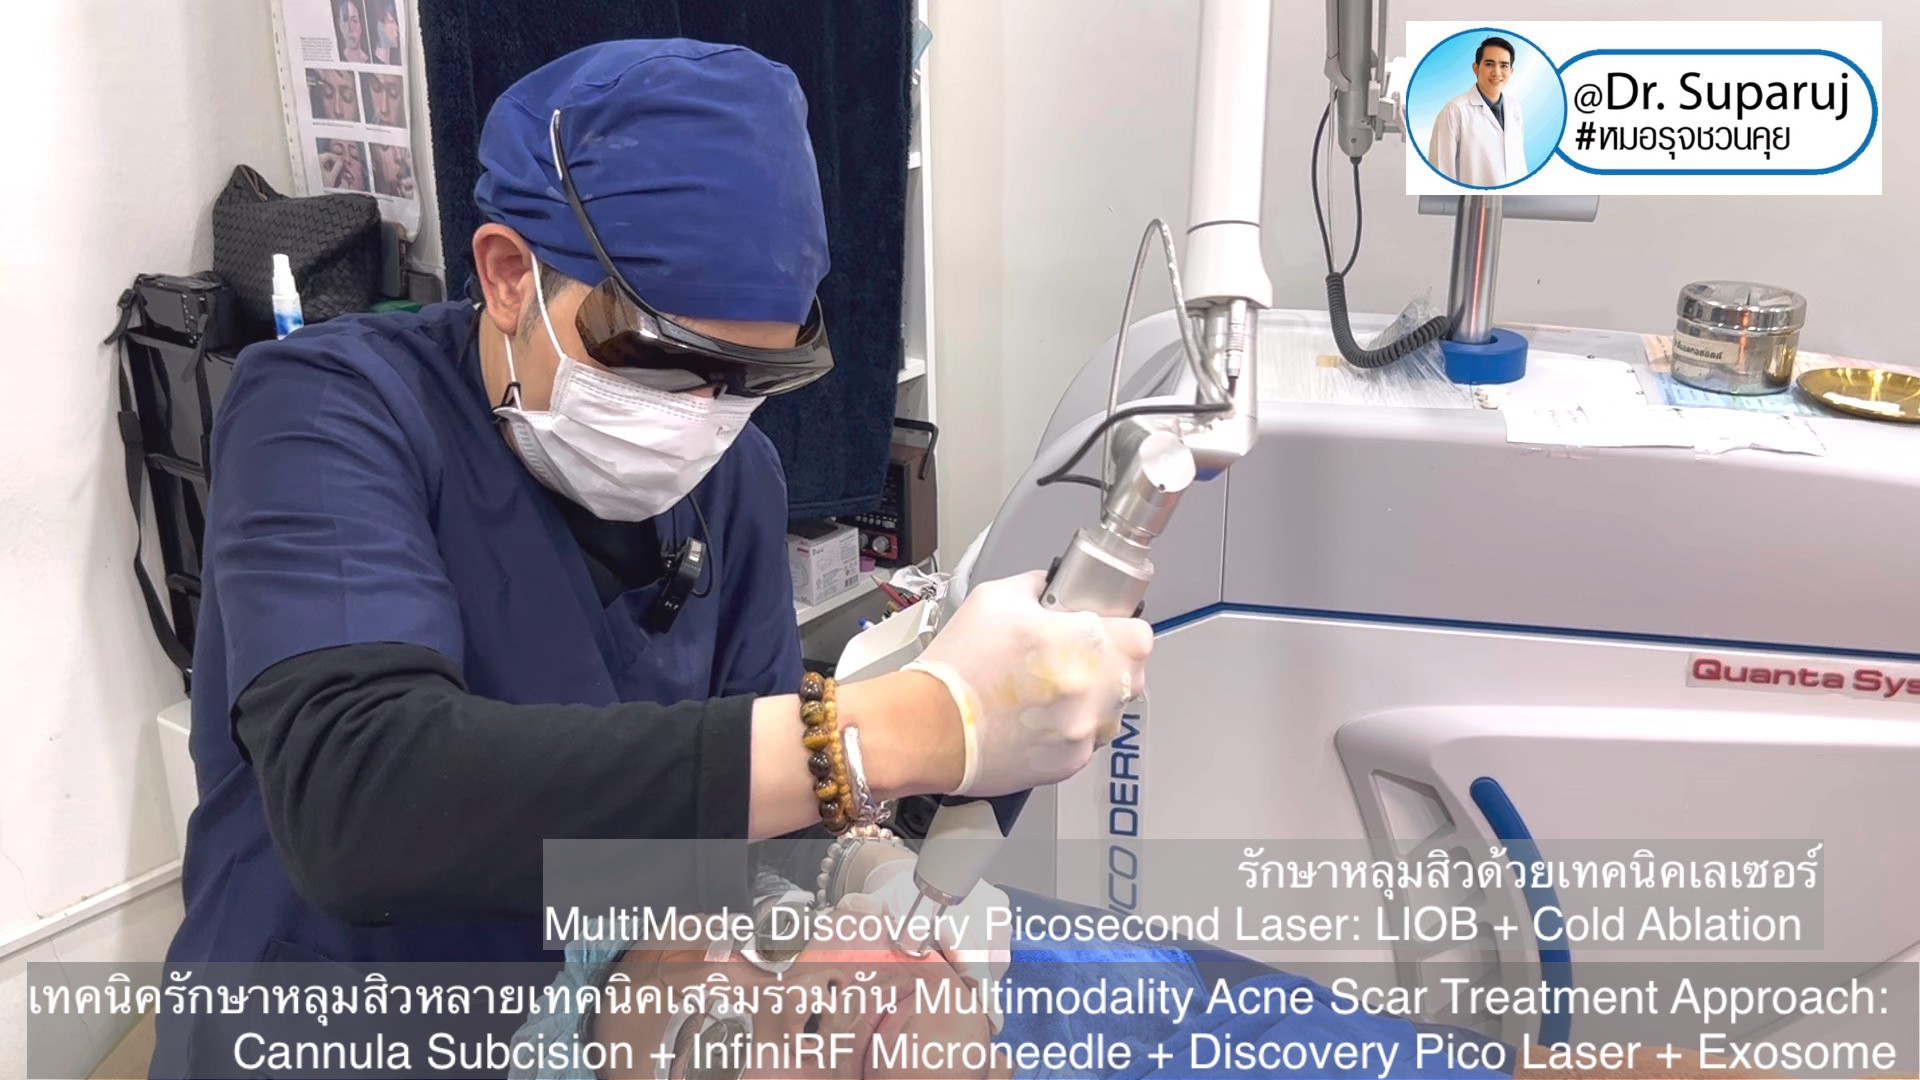 เทคนิครักษาหลุมสิวด้วยหลายเทคนิคเสริมร่วมกัน Multimodality Acne Scar Treatment Approach: Cannula Subcision + InfiniRF Microneedle + Discovery Pico Laser + Exosome